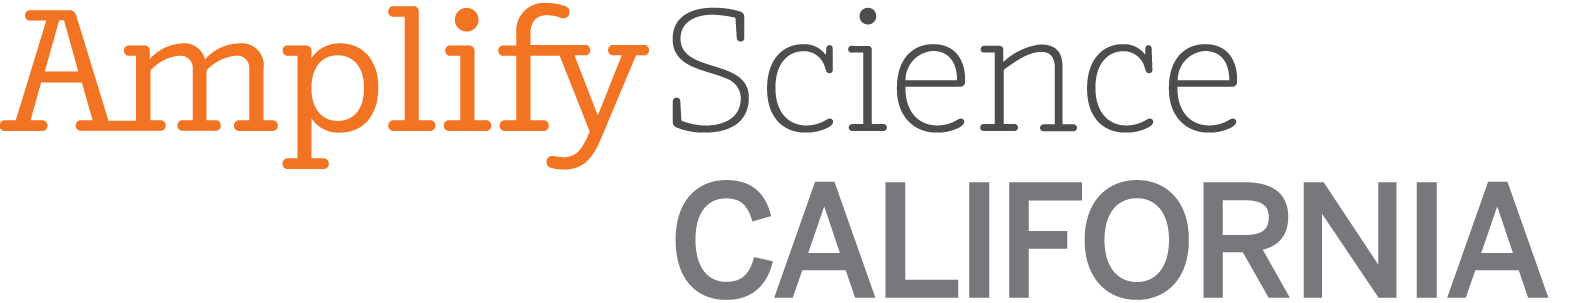 Amplify Science logo